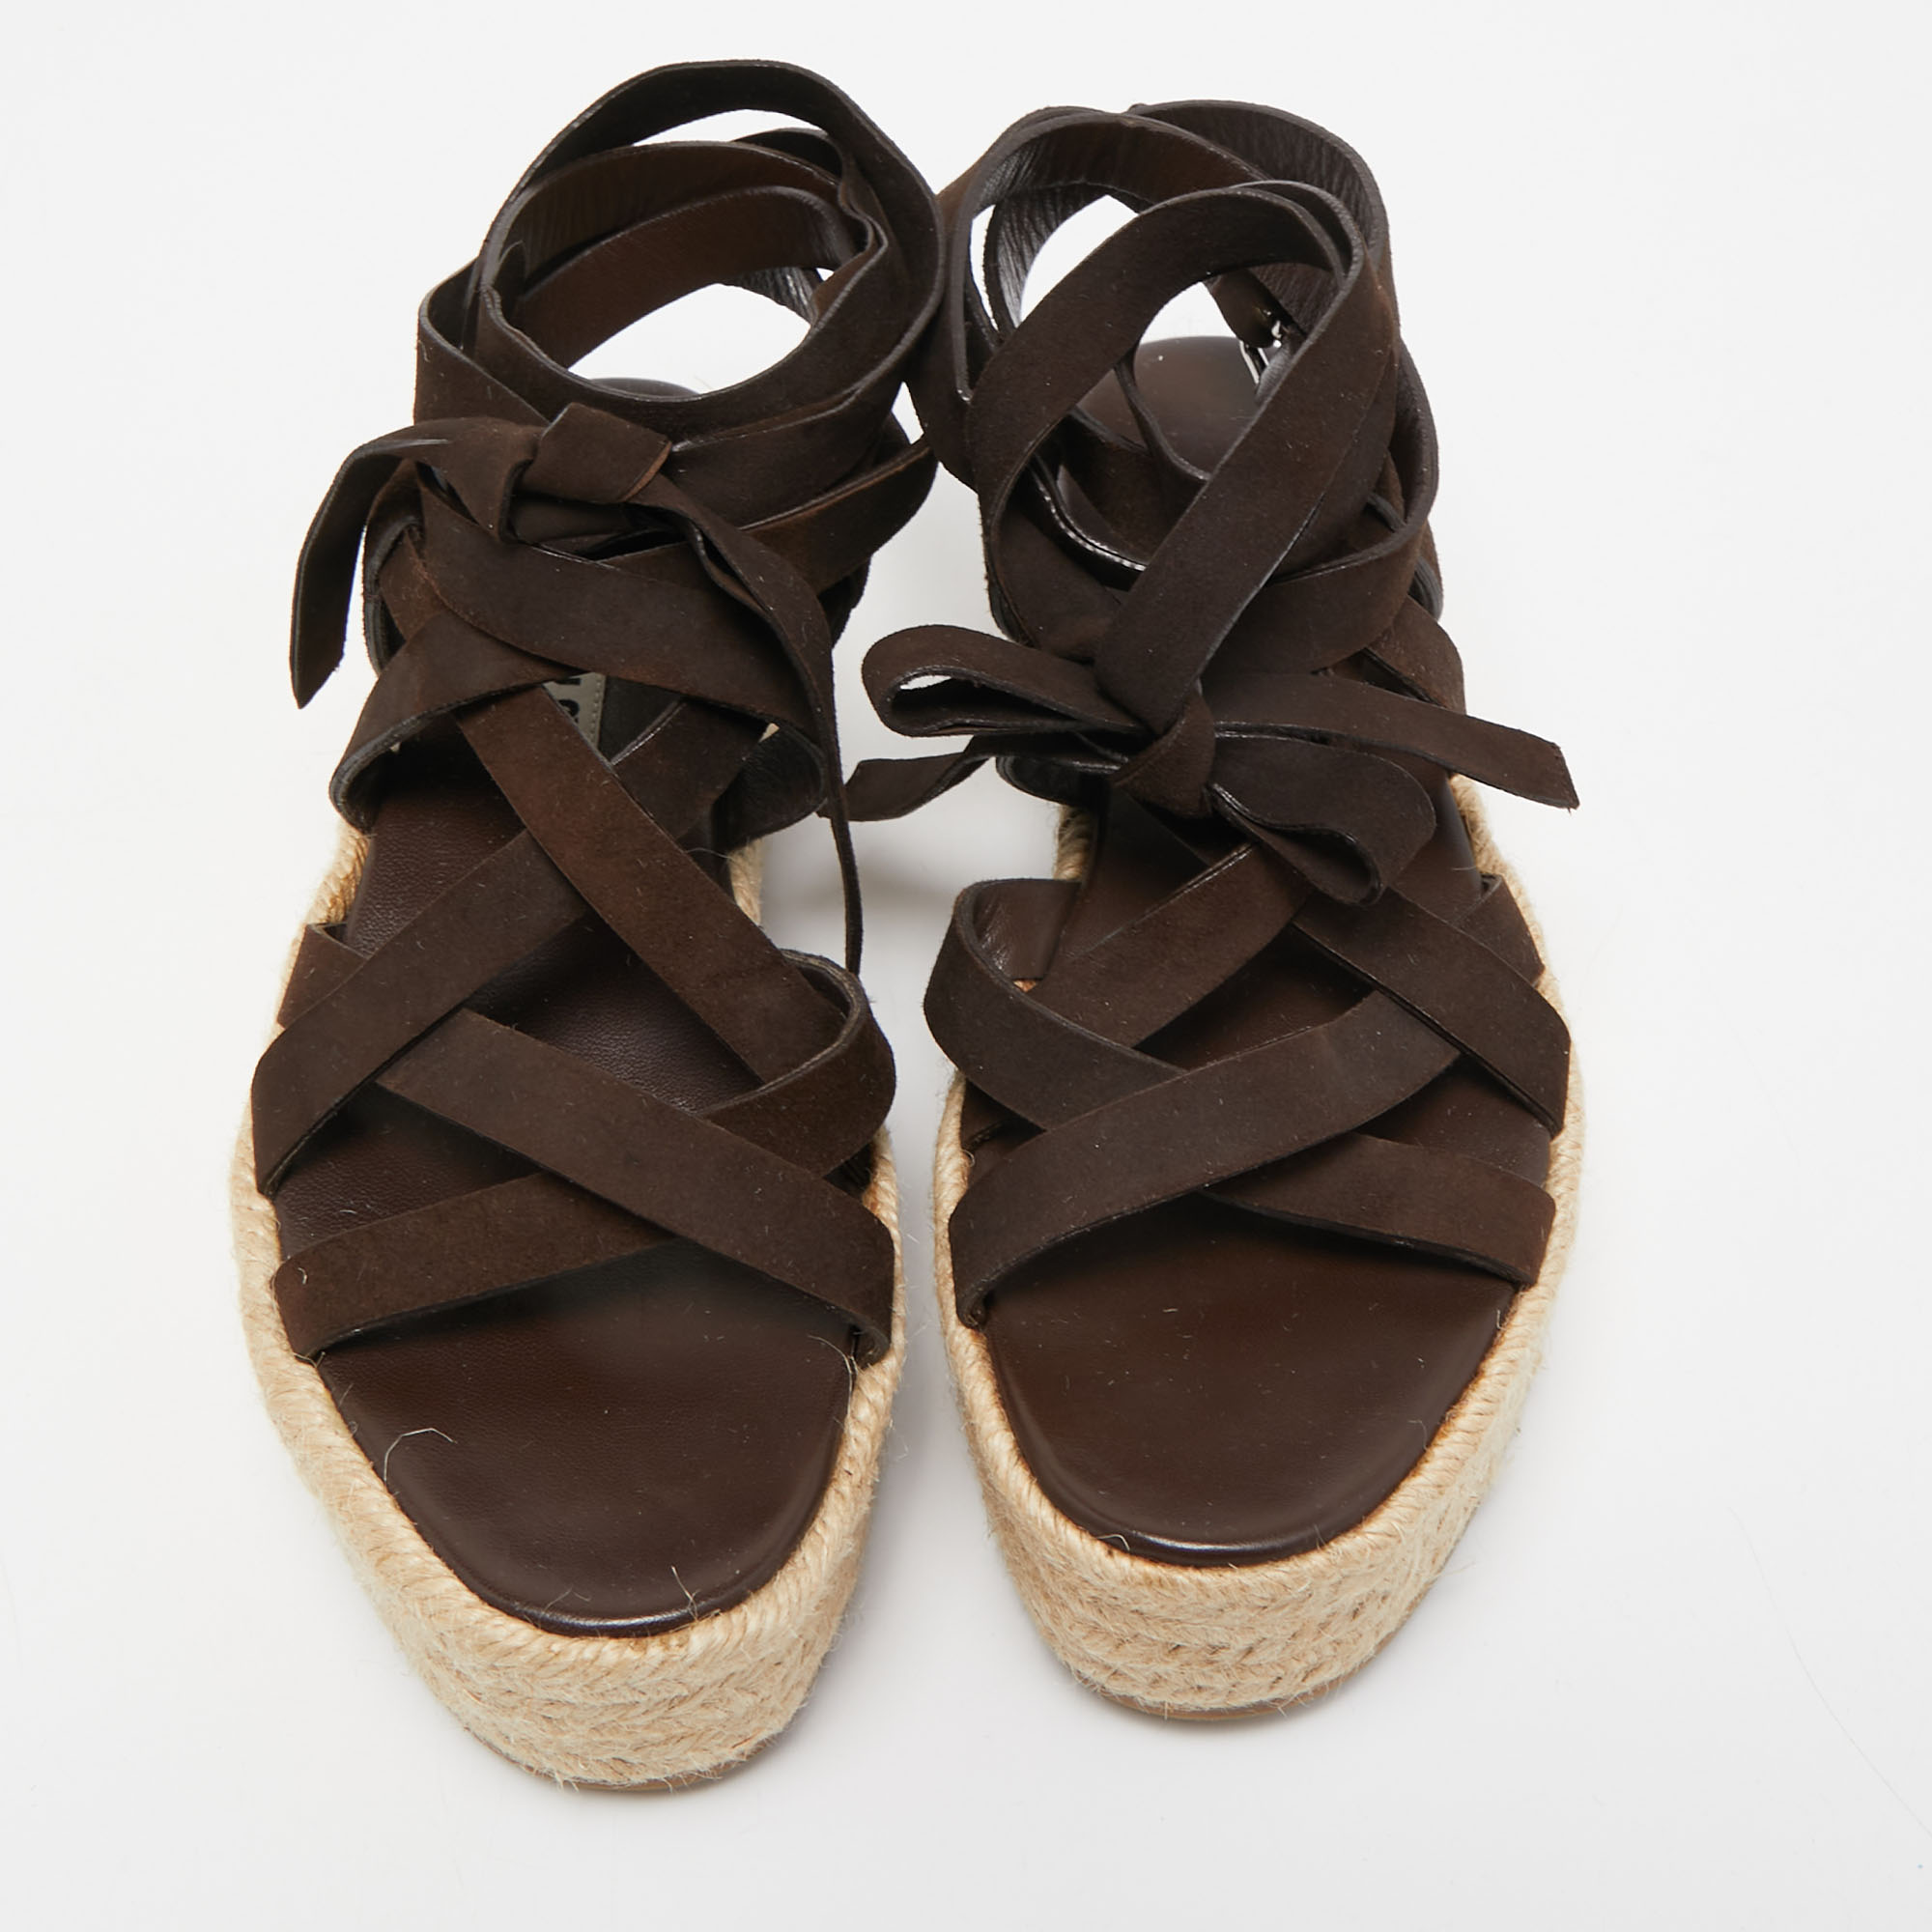 Miu Miu Dark Brown Suede Strappy Espadrille Platform Sandals Size 36